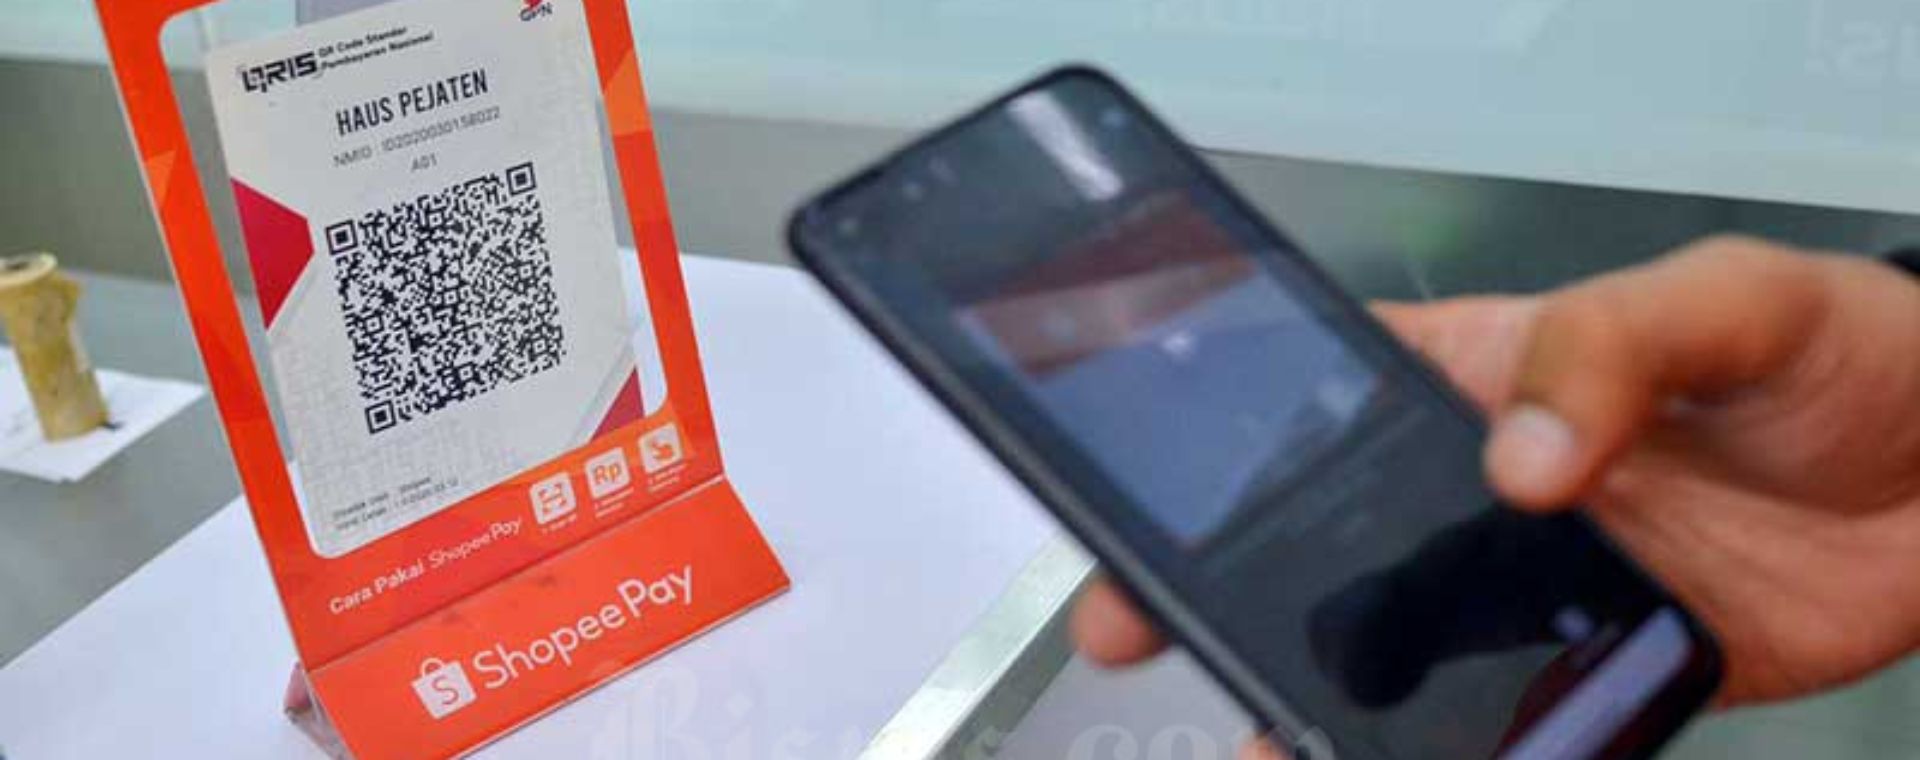  Shopee Pay di Indonesia Masih Aman, Bagaimana Prospek Bisnis Dompet Digital?